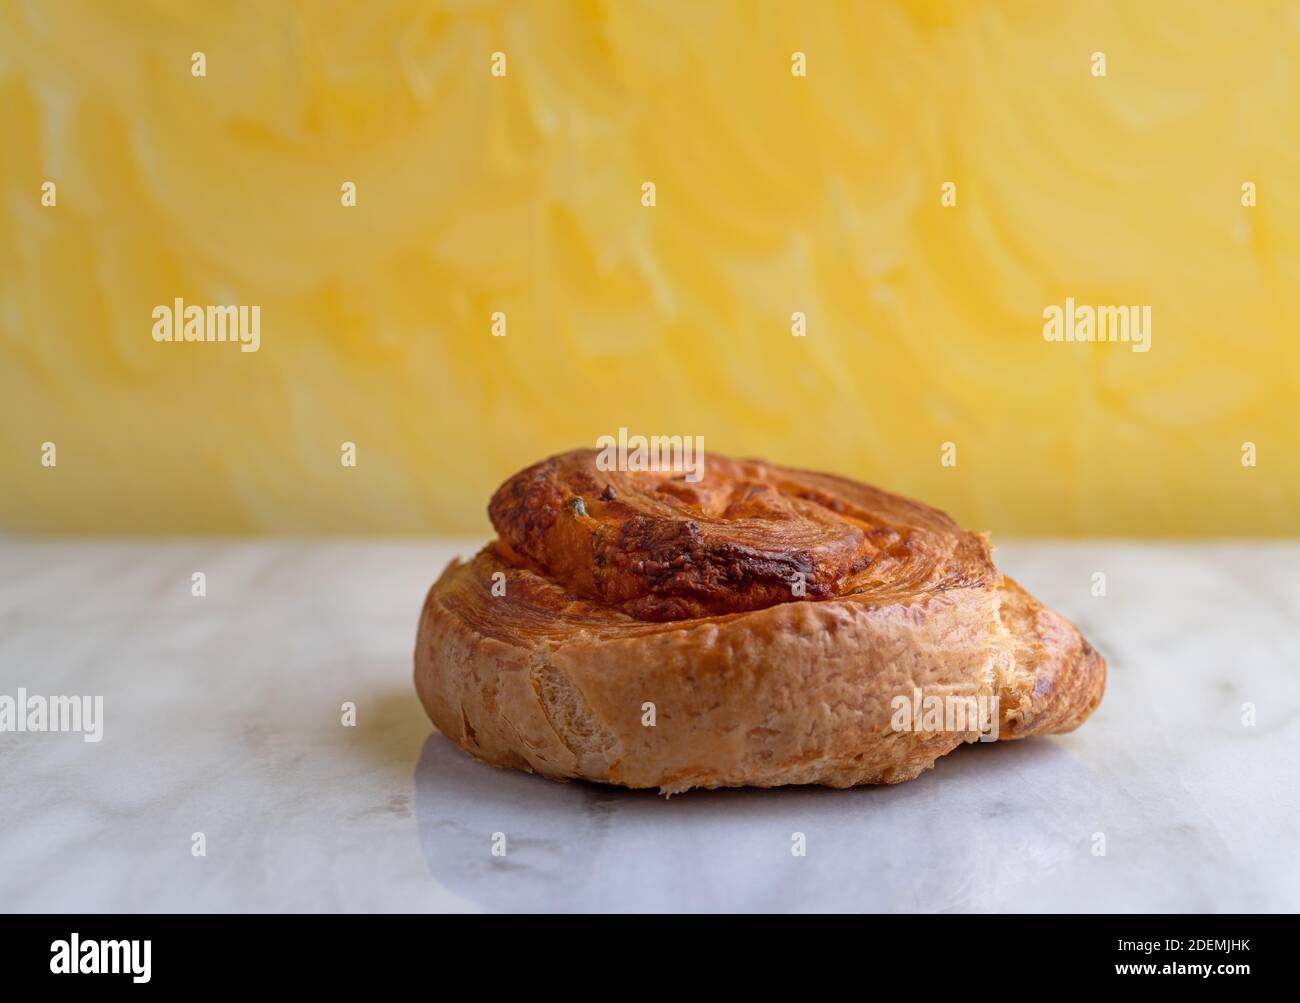 Vista lateral de un solo pan de jalapeno una encimera de mármol gris con una pared con textura amarilla el fondo iluminado con l natural Foto de stock